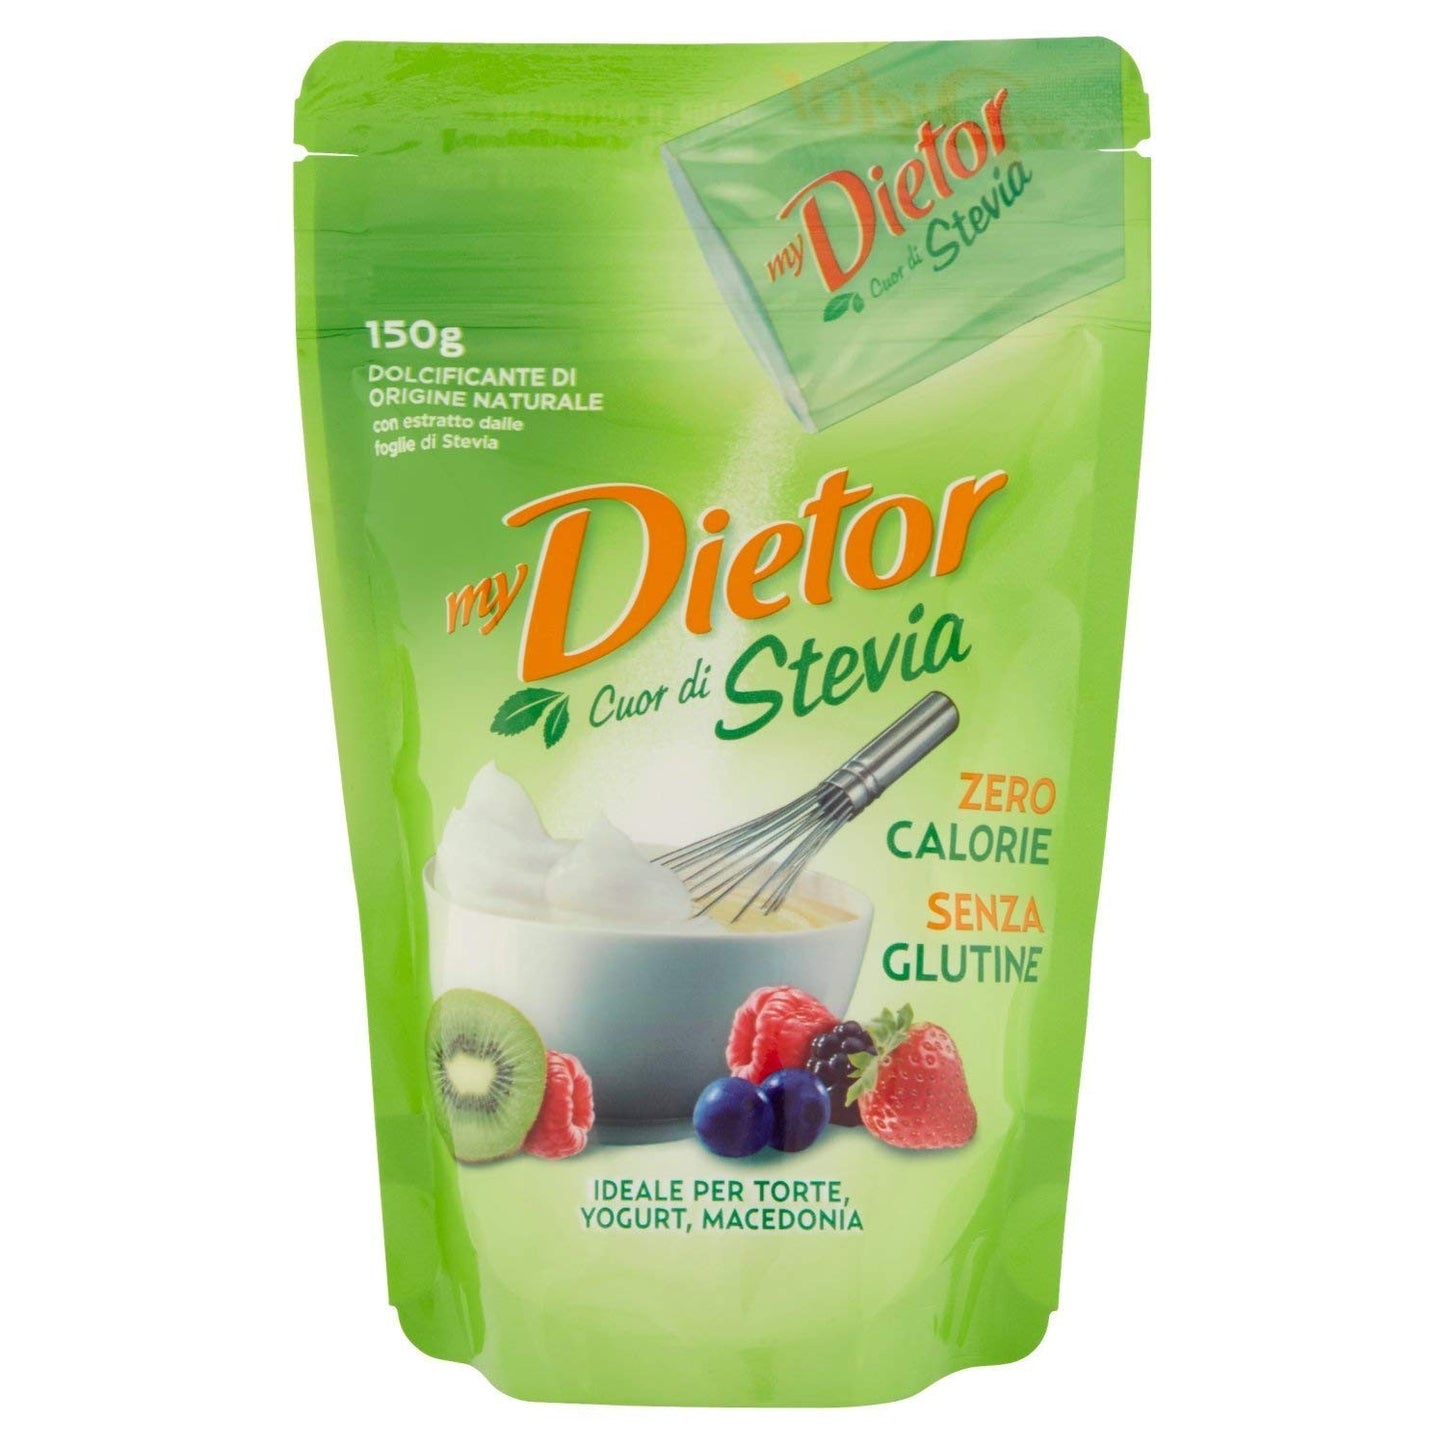 Dietor - Dolcificante, Cuor di Stevia - 4 pezzi da 150 g [600 g]